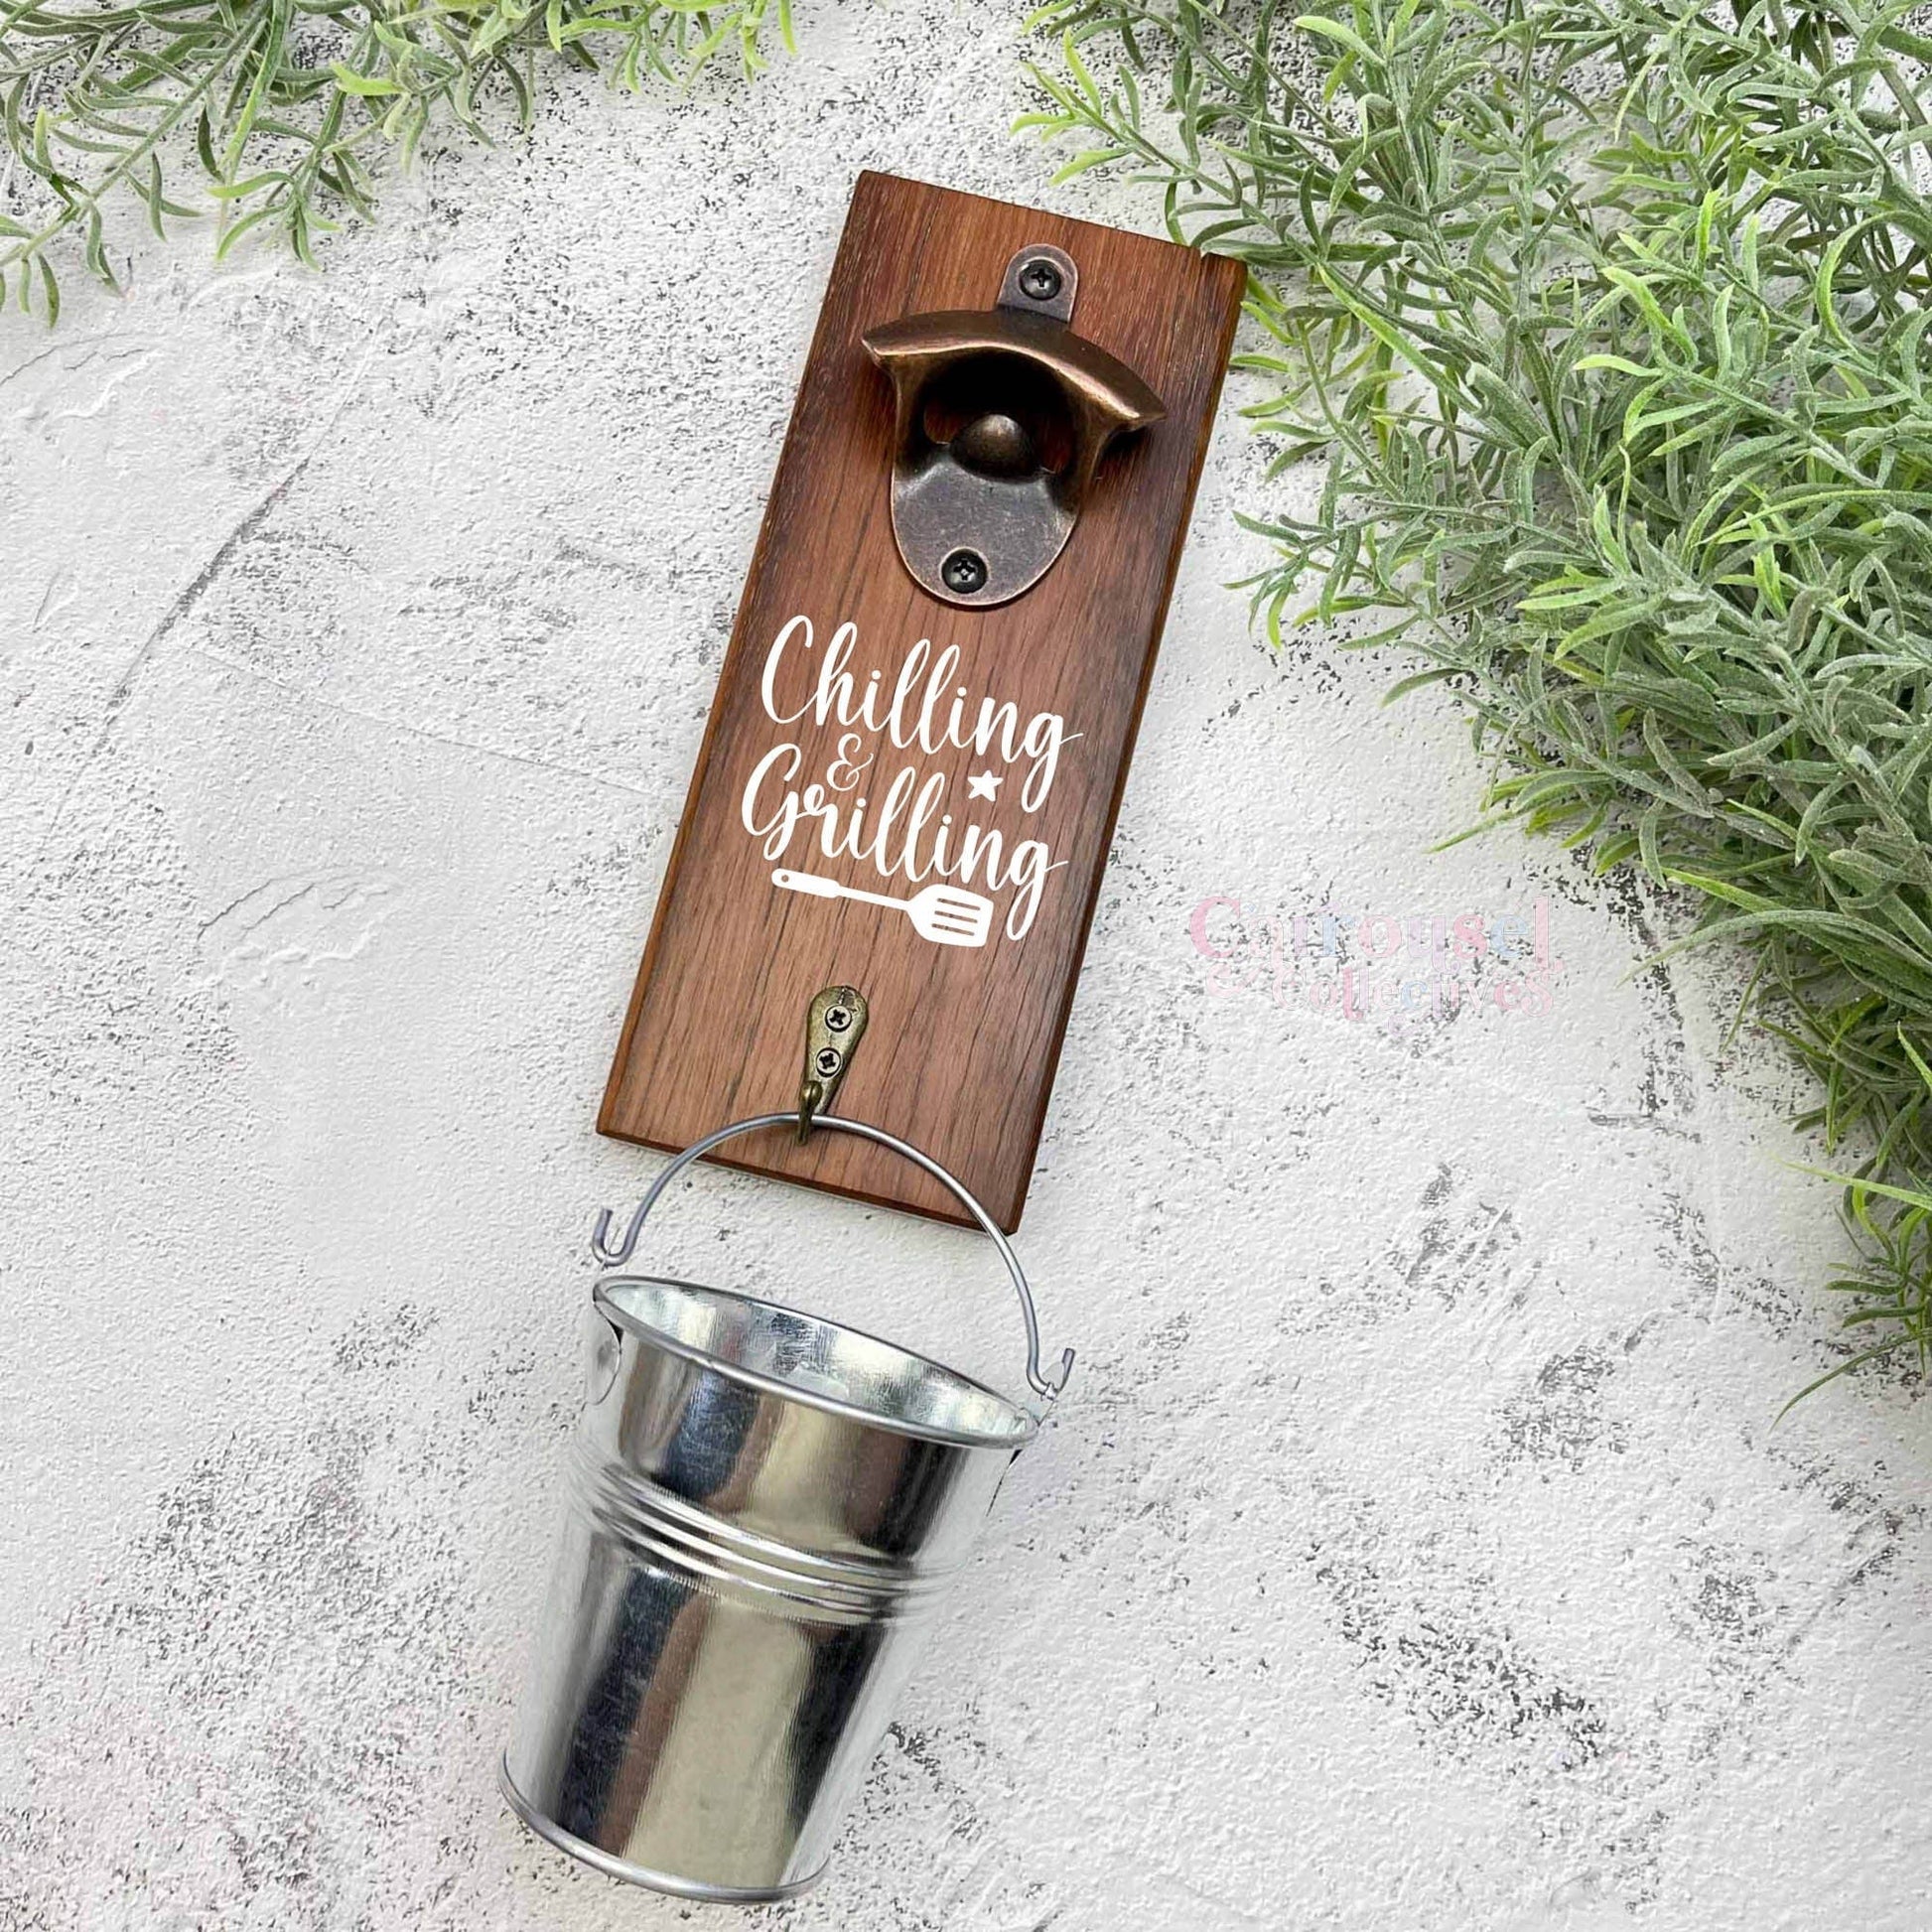 Chilling and Grilling bottle opener sign, Australian ironbark hardwood sign